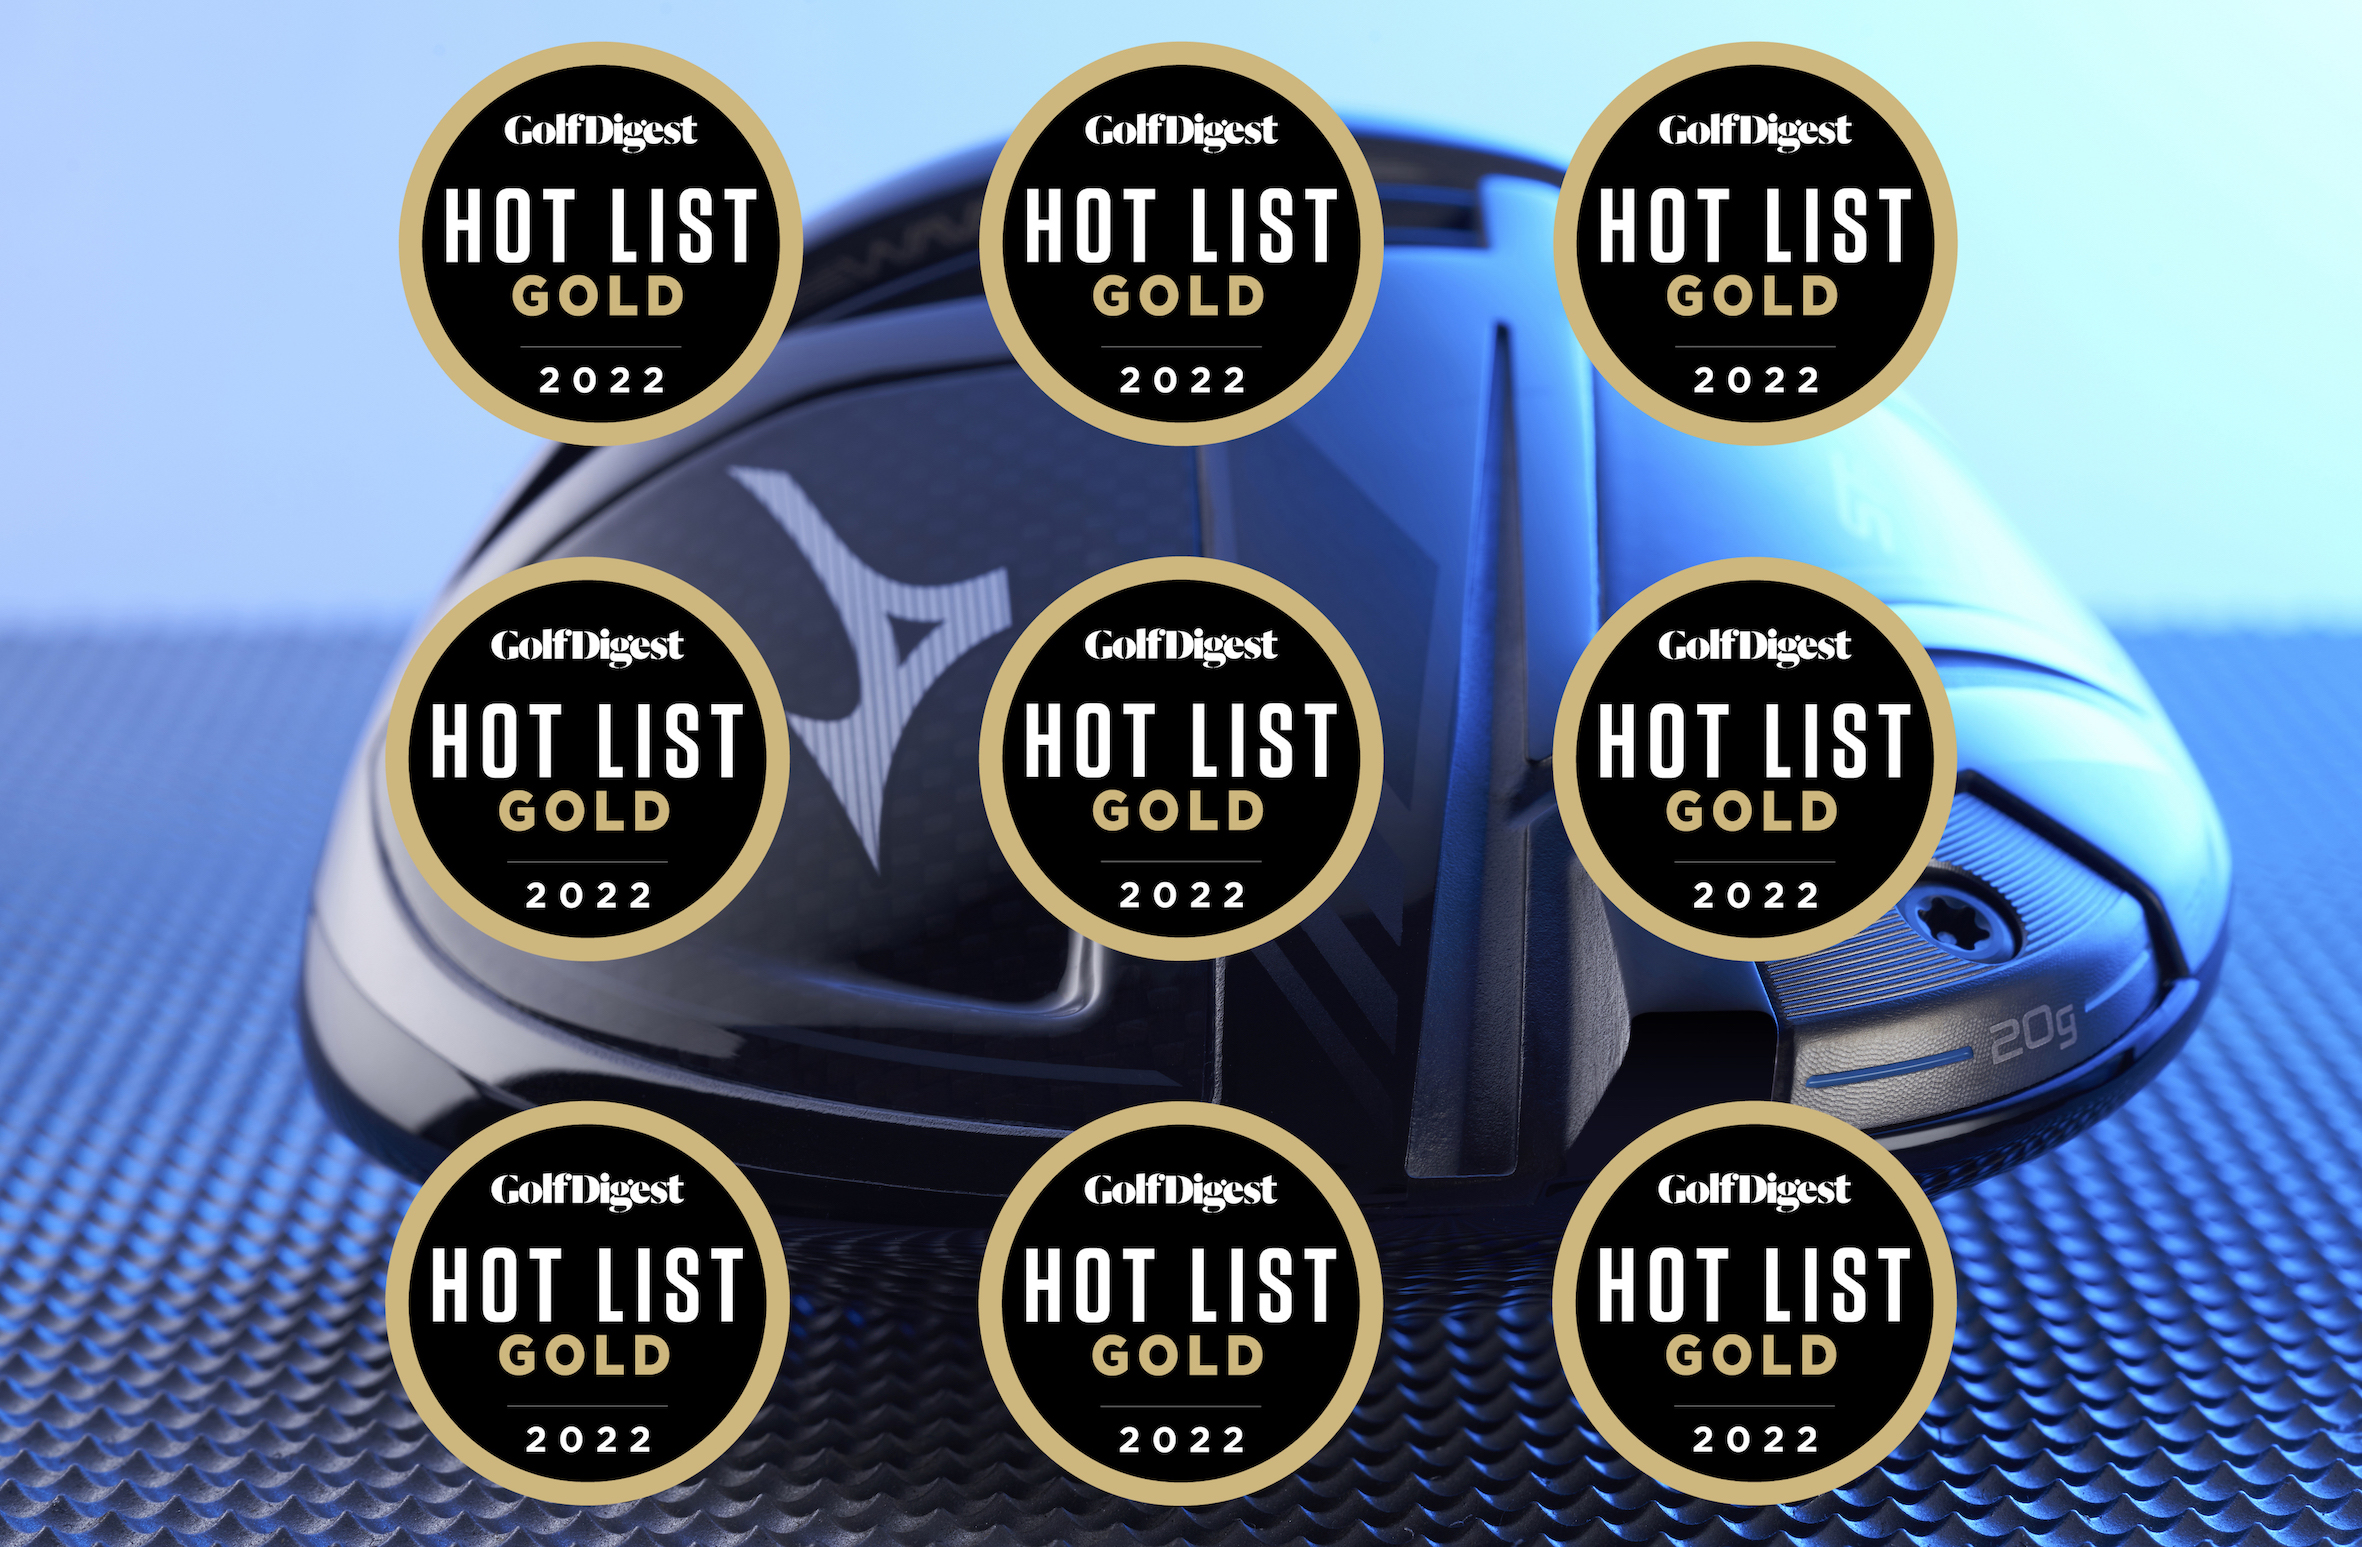 Hot List Golds